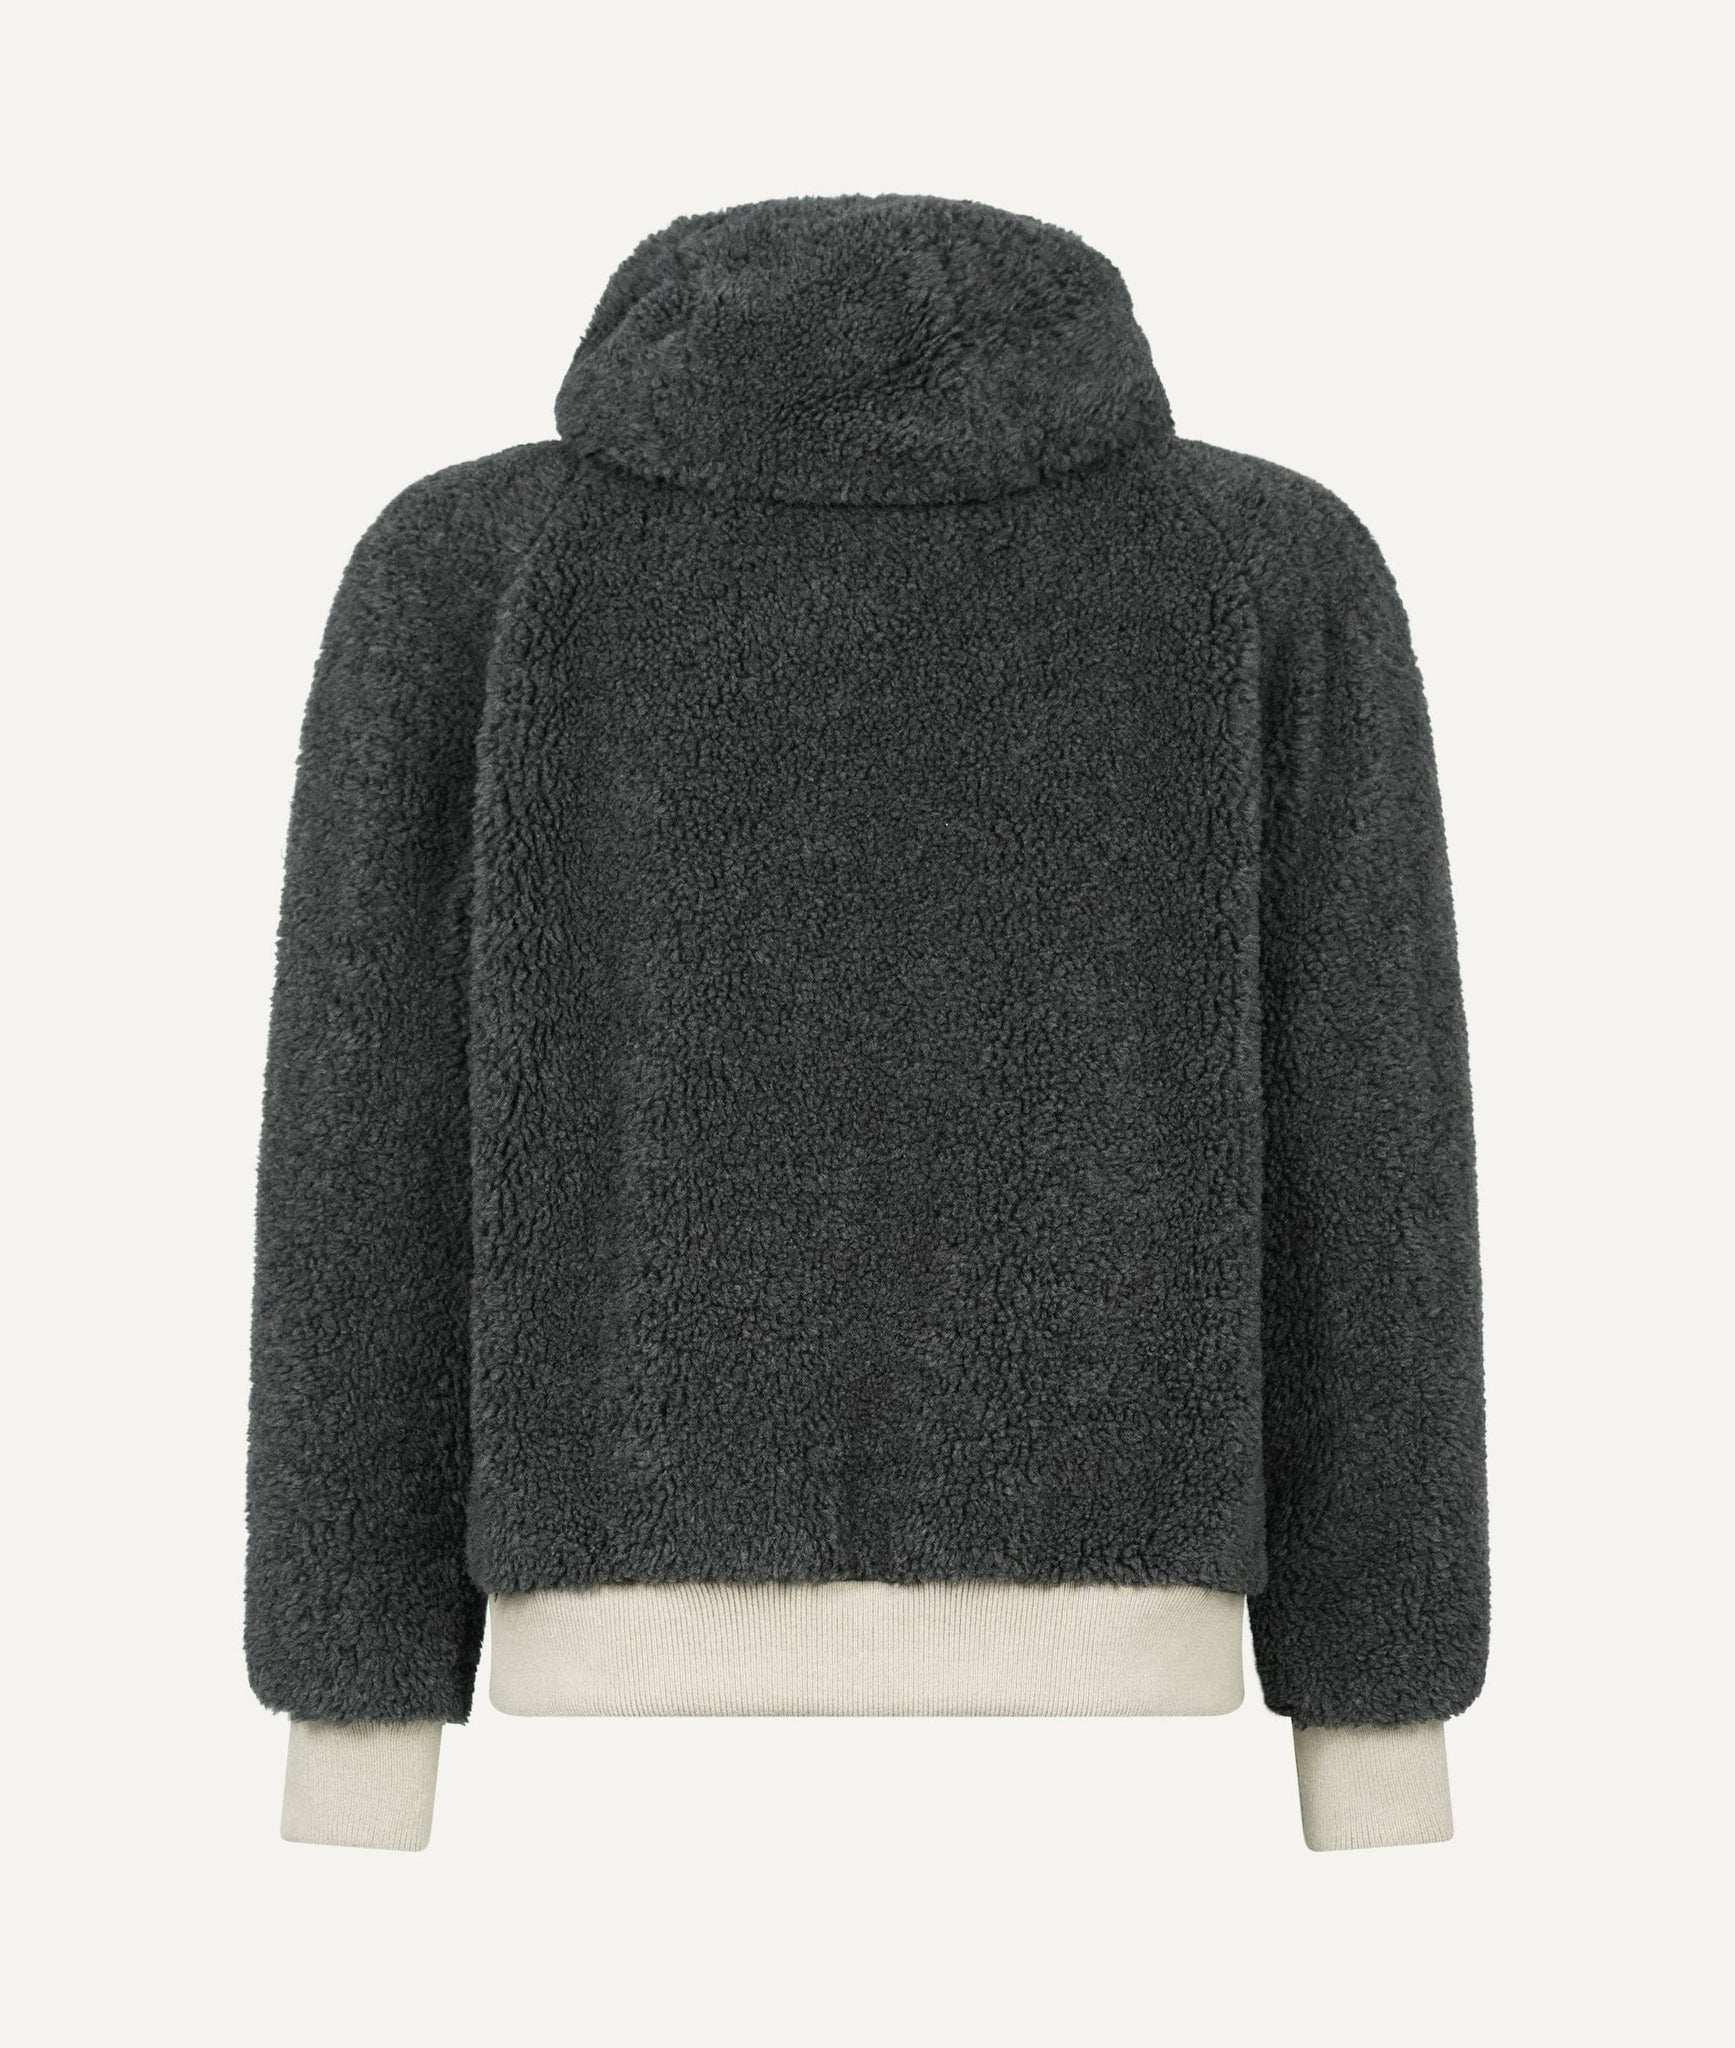 Eleventy - Jacket in Wool